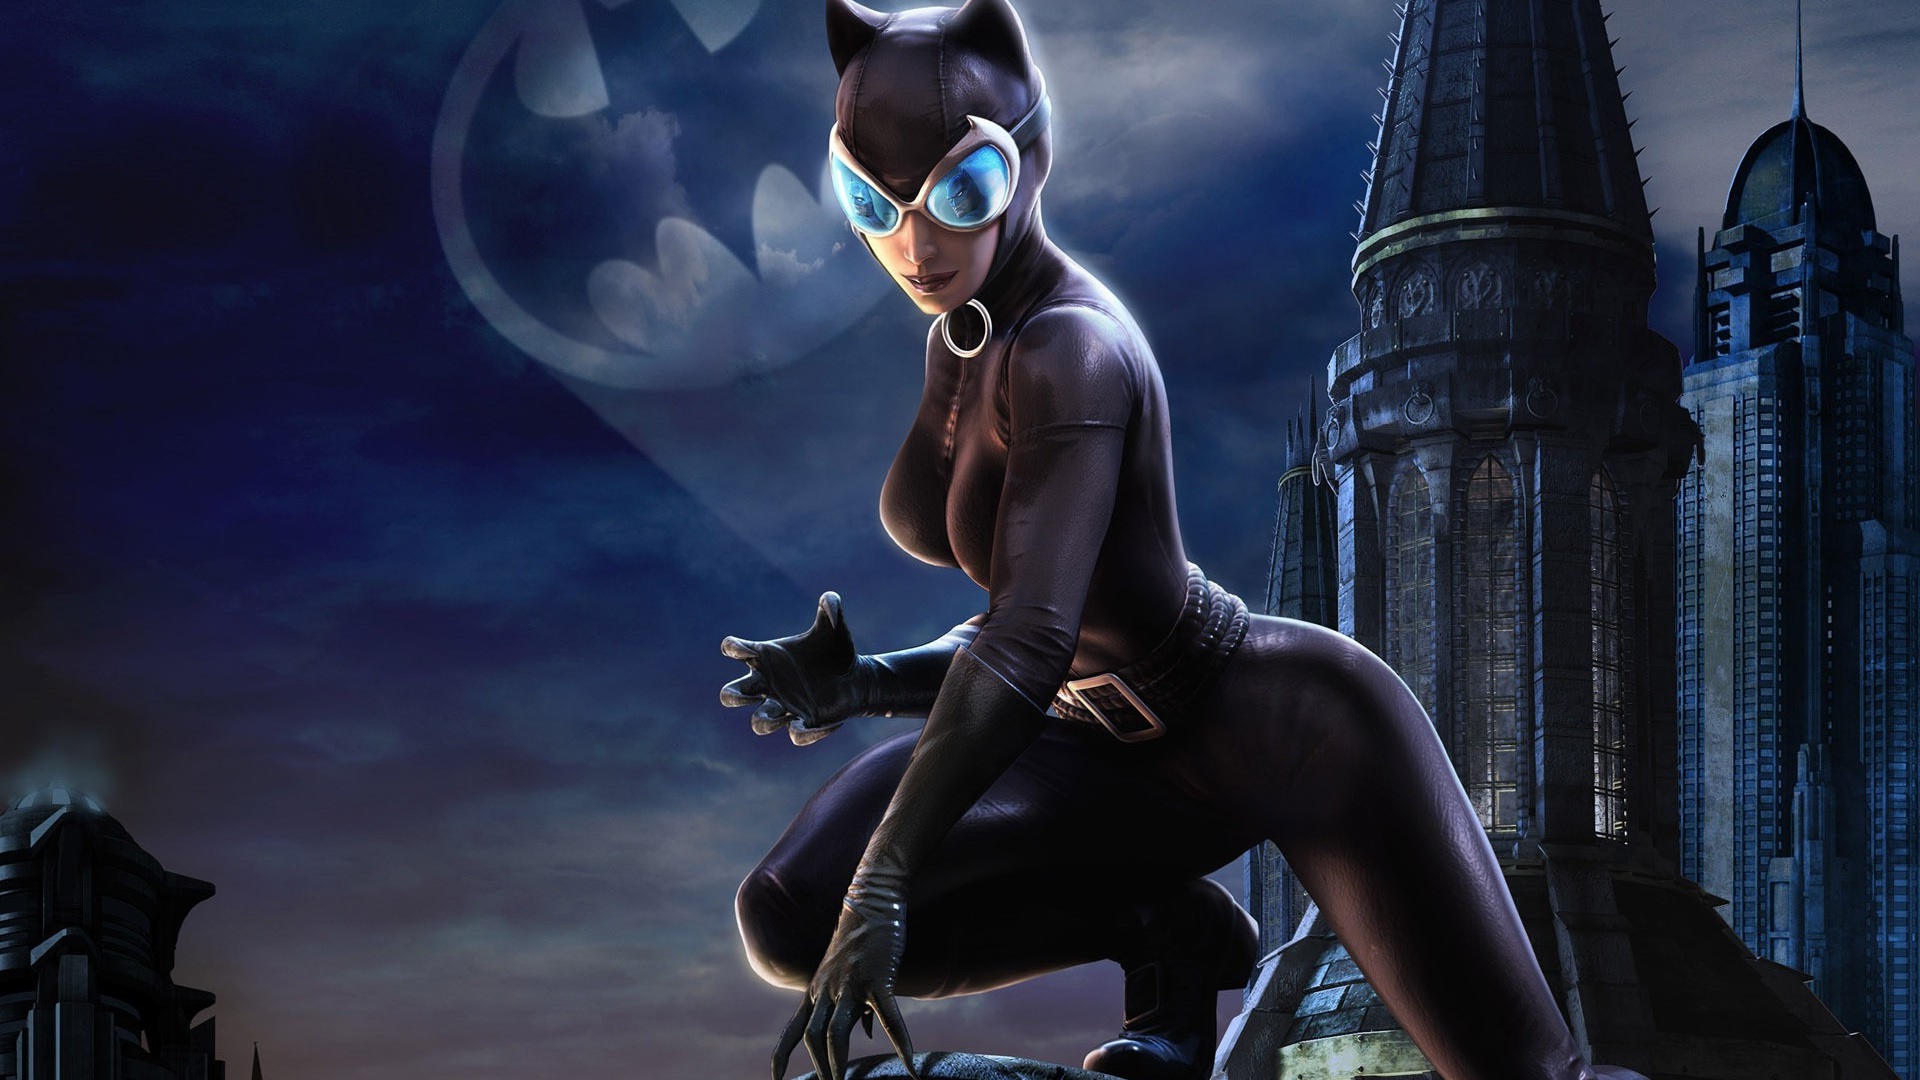 catwoman hd wallpaper,personaggio fittizio,catwoman,cg artwork,batman,supercattivo